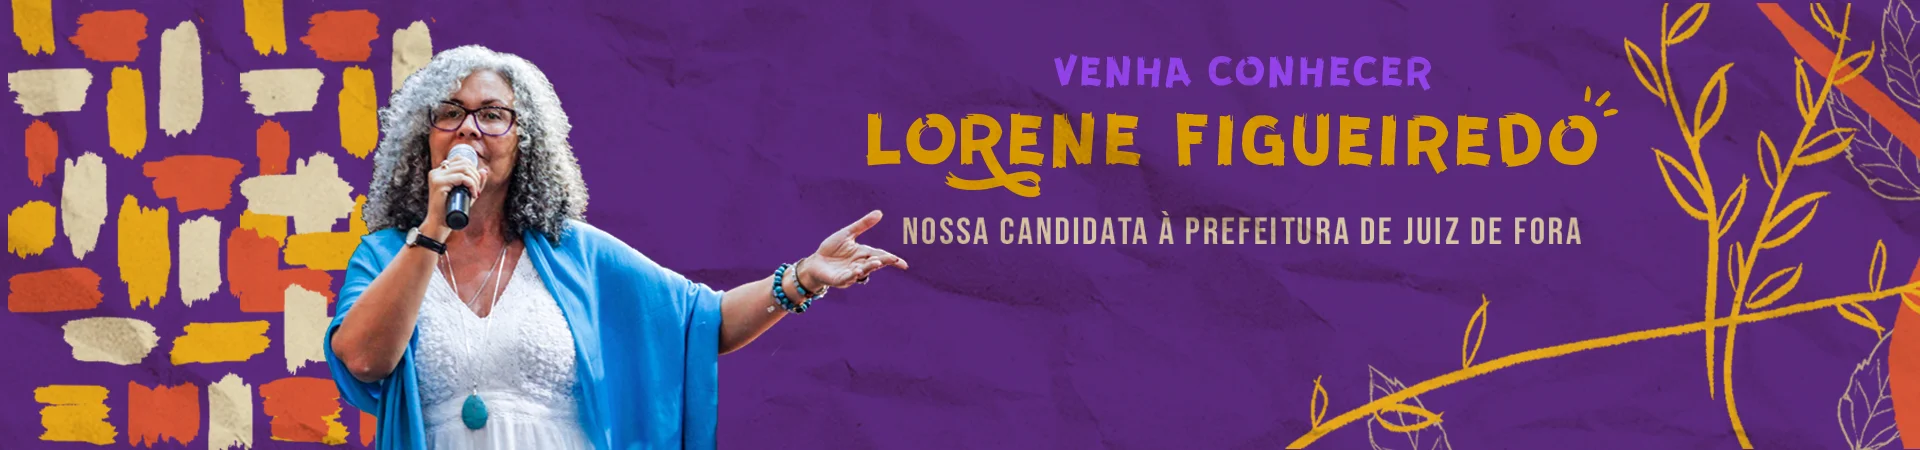 Conheça Lorene Figueiredo